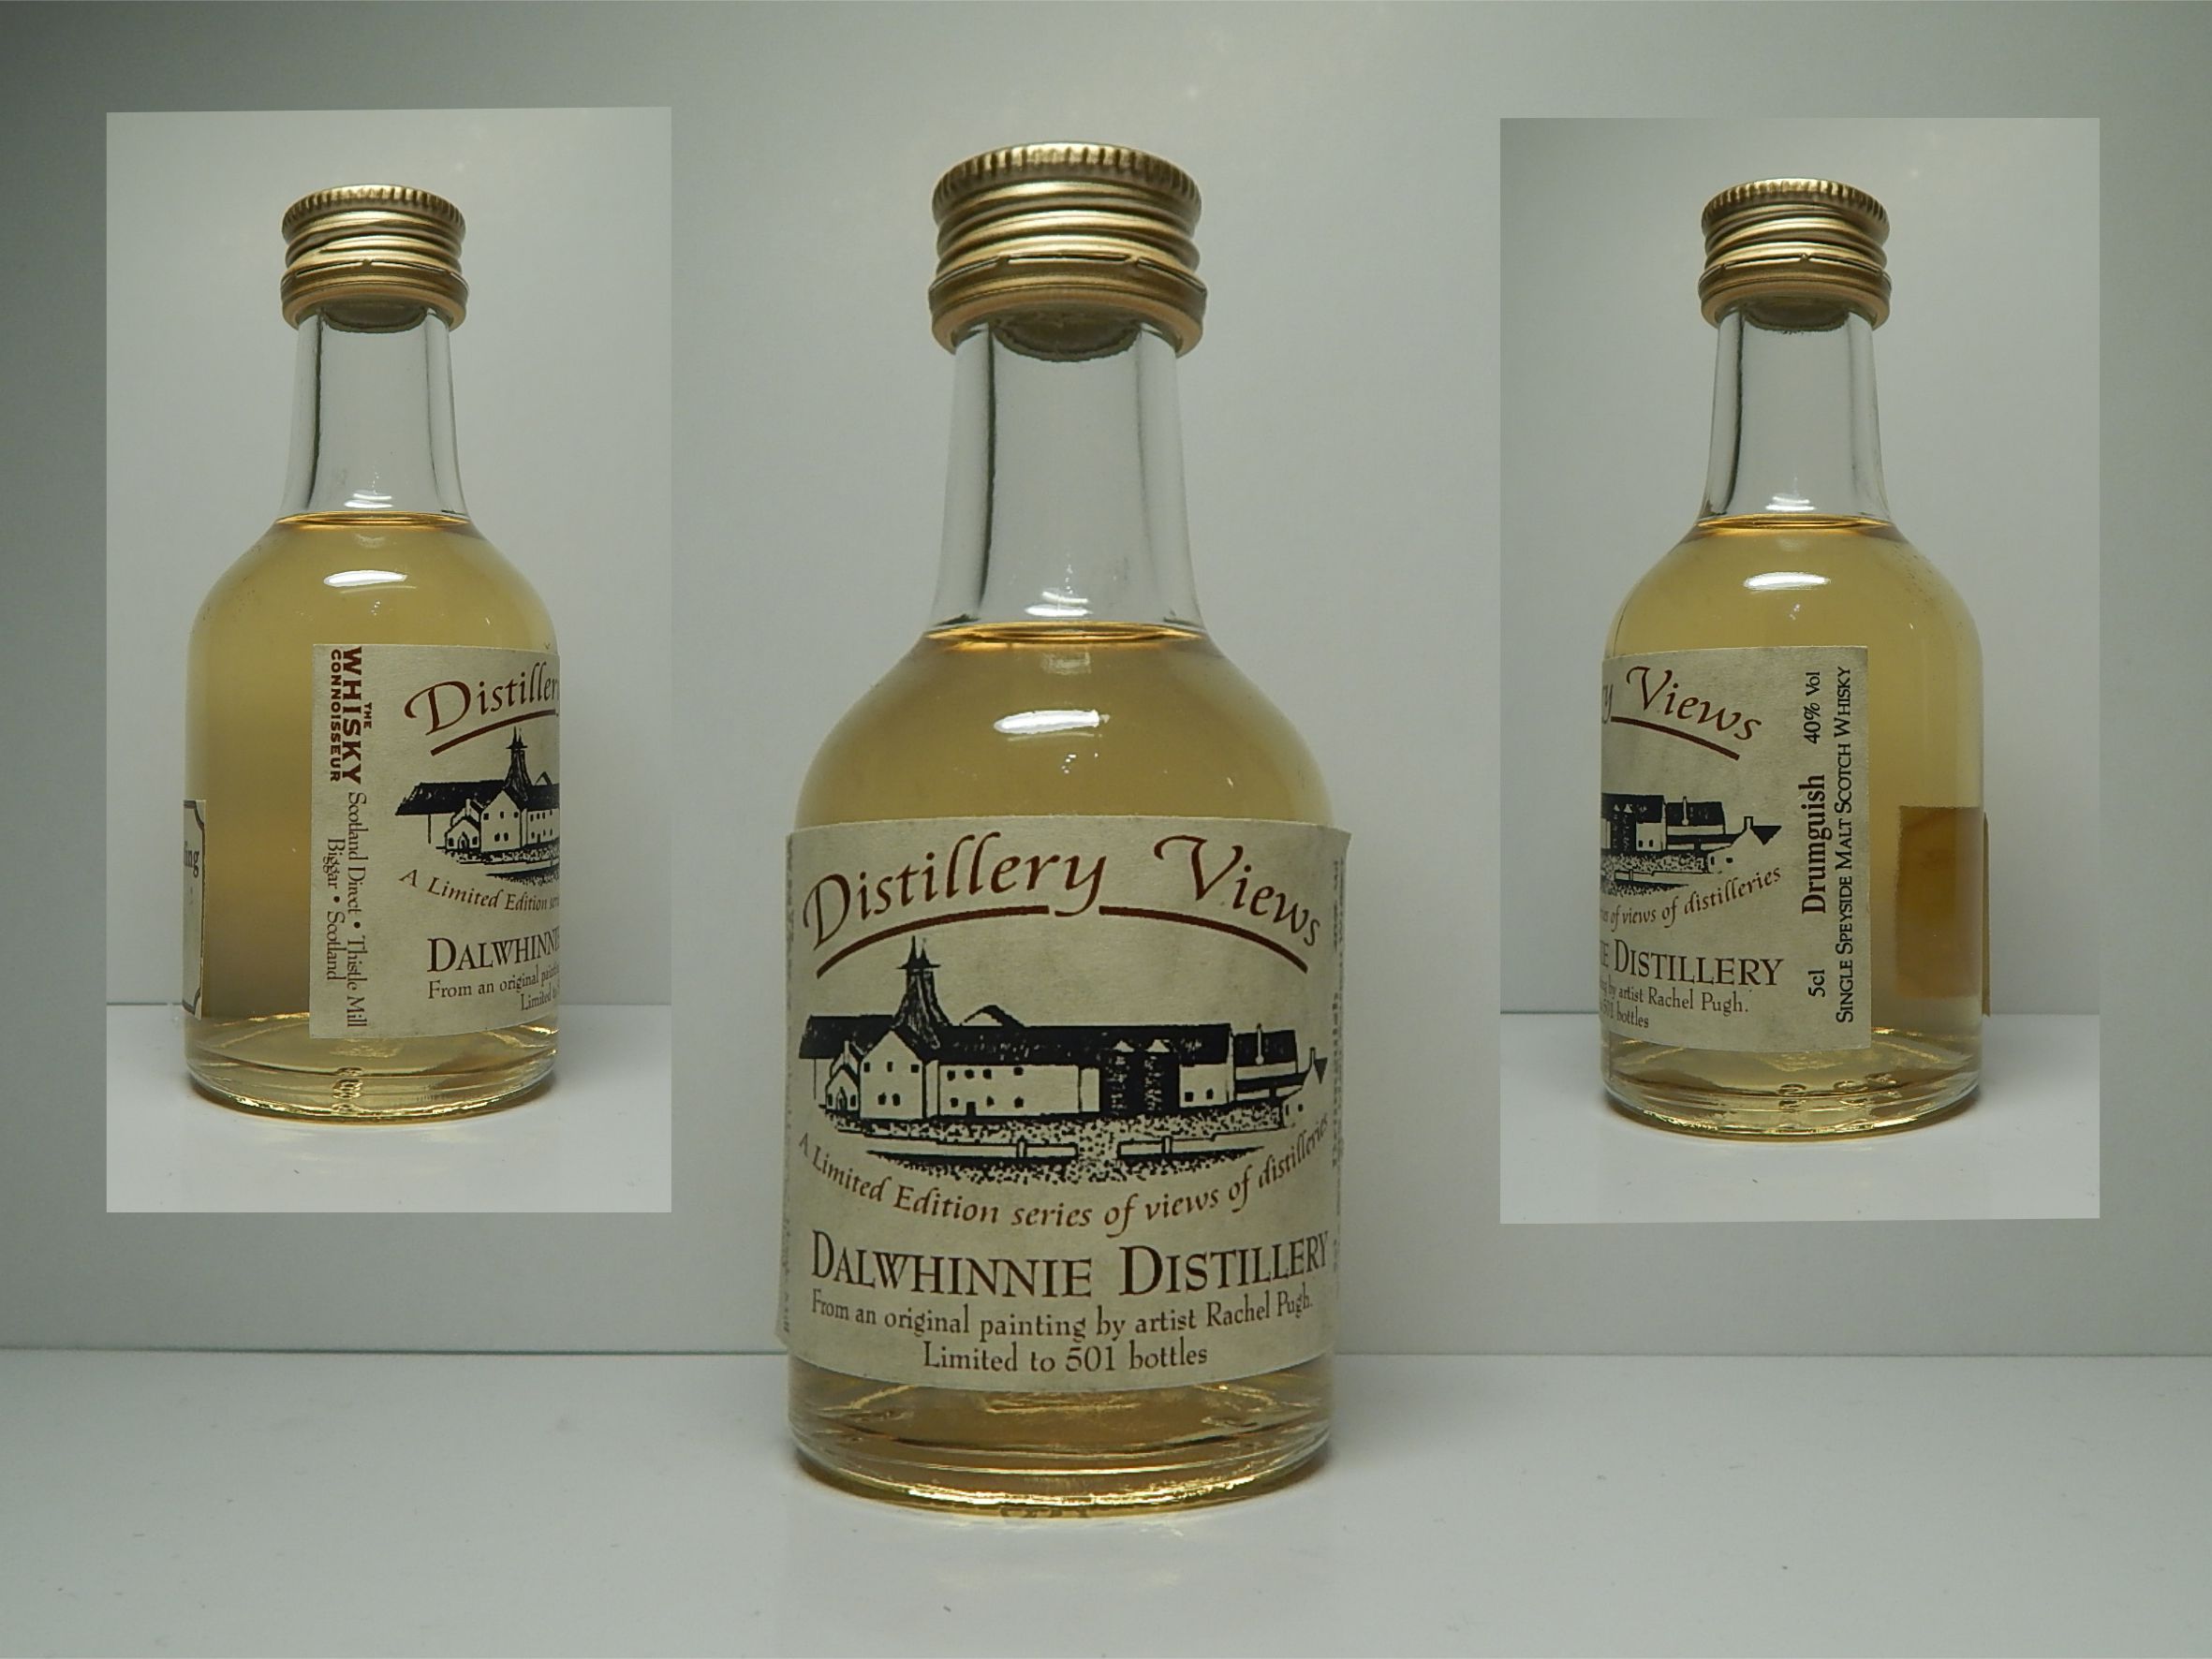 Distillery Views DRUMGUISH DALWHINNIE SSMSW " Whisky Connoisseur " 5cl 40%Vol 1/501 bottles